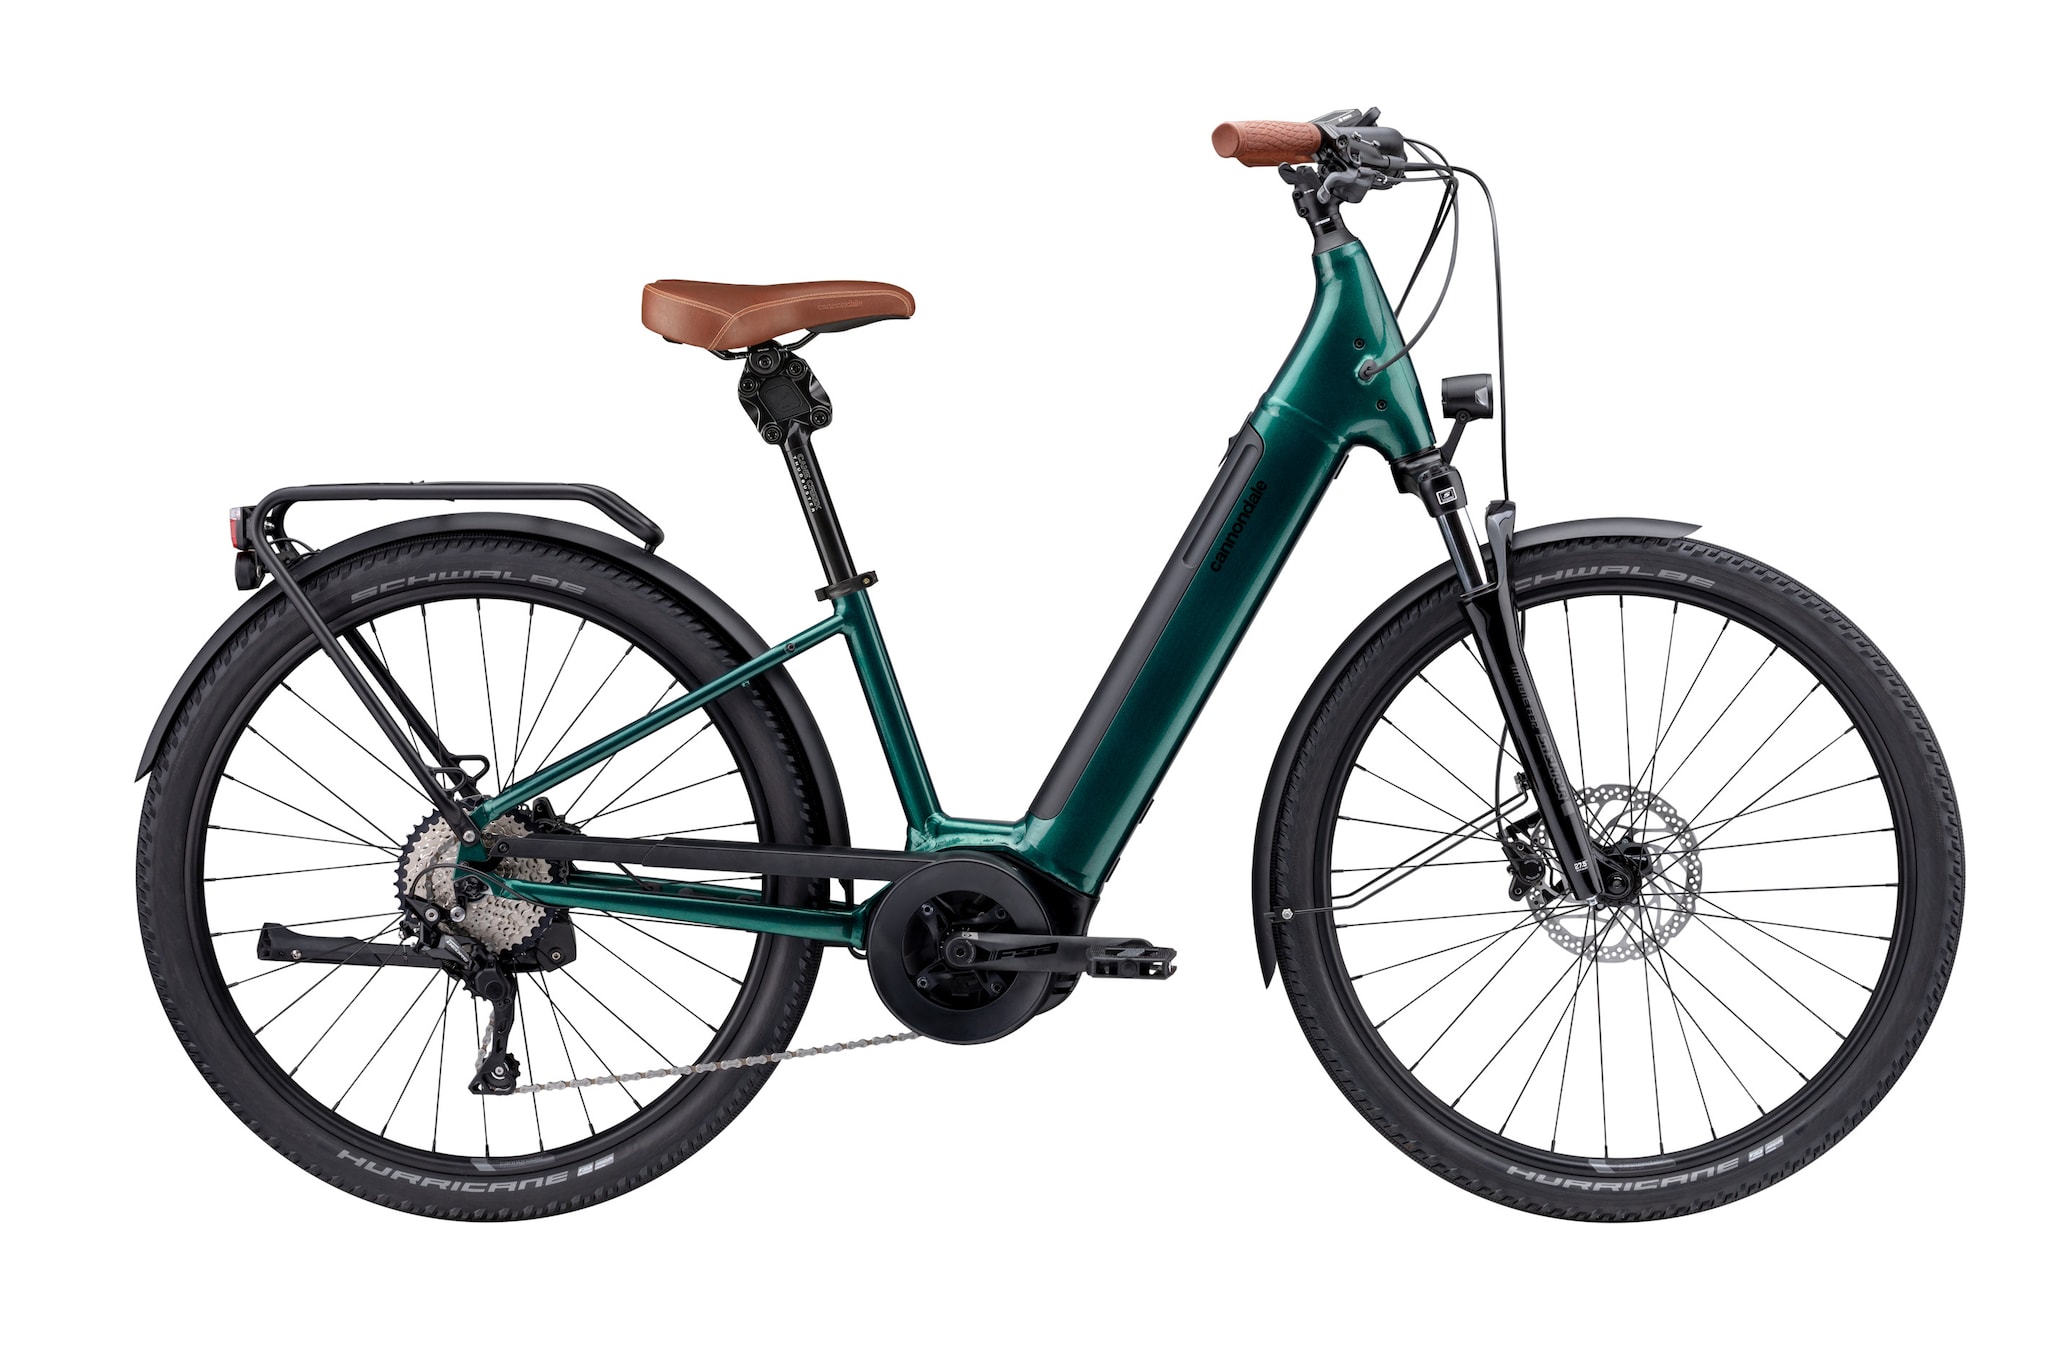 Bicicletta elettrica Adventure Neo 1 EQ, equipaggiata Bosch, con sella e manopole in cuoio, CANNONDALE (4.099 €).